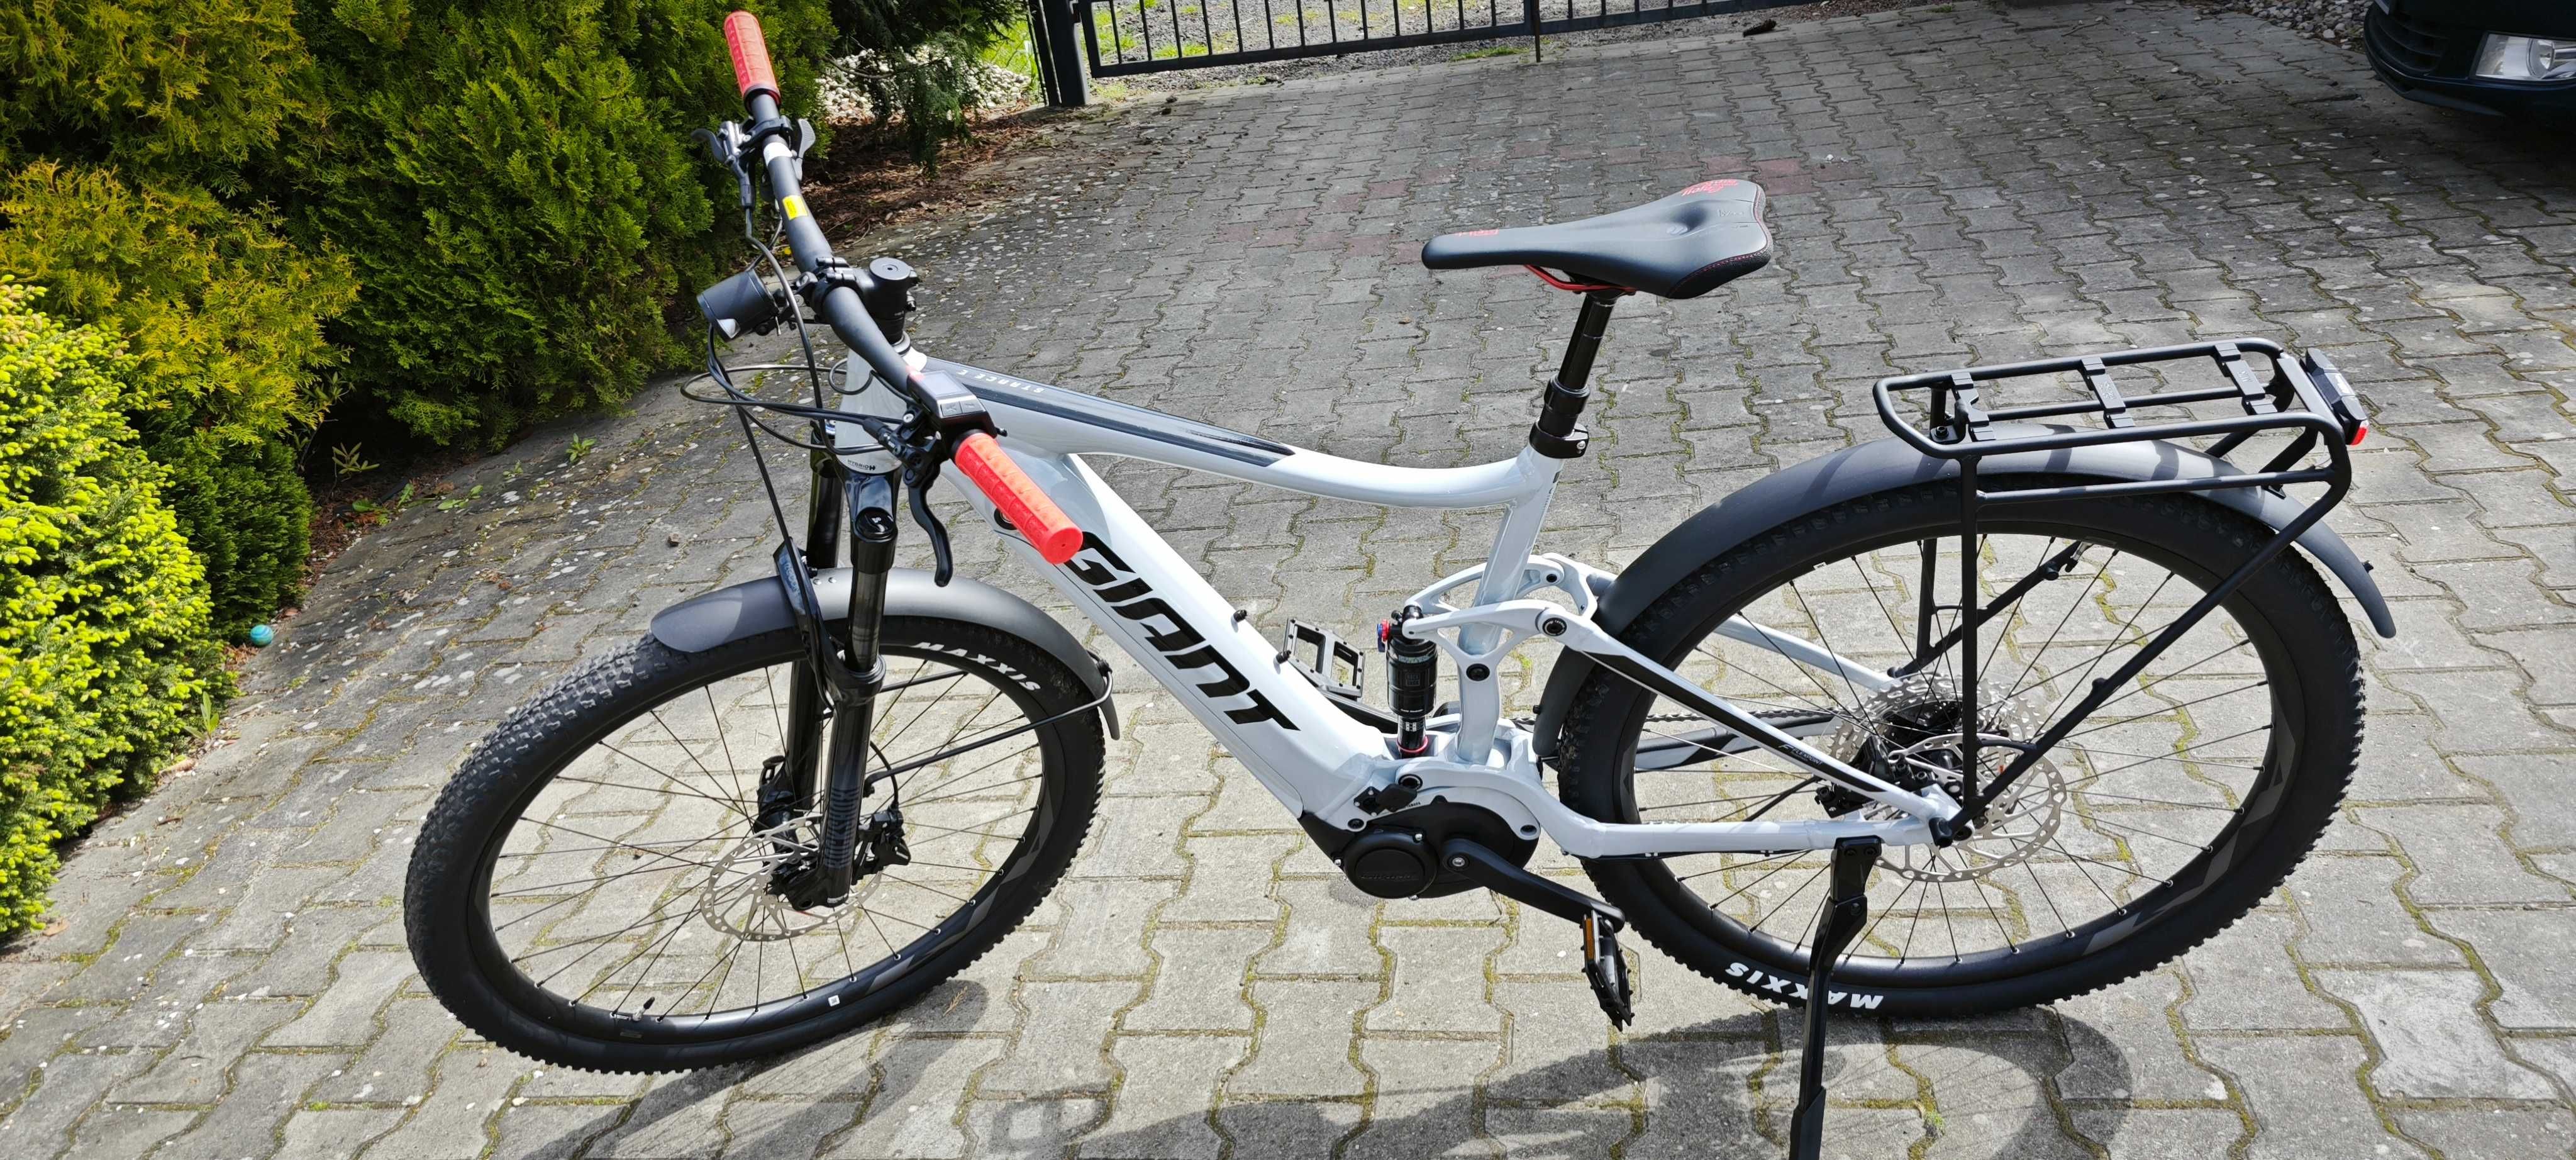 Rower e-Bike elektryczny FULL Giant  NOWY rozmiar L